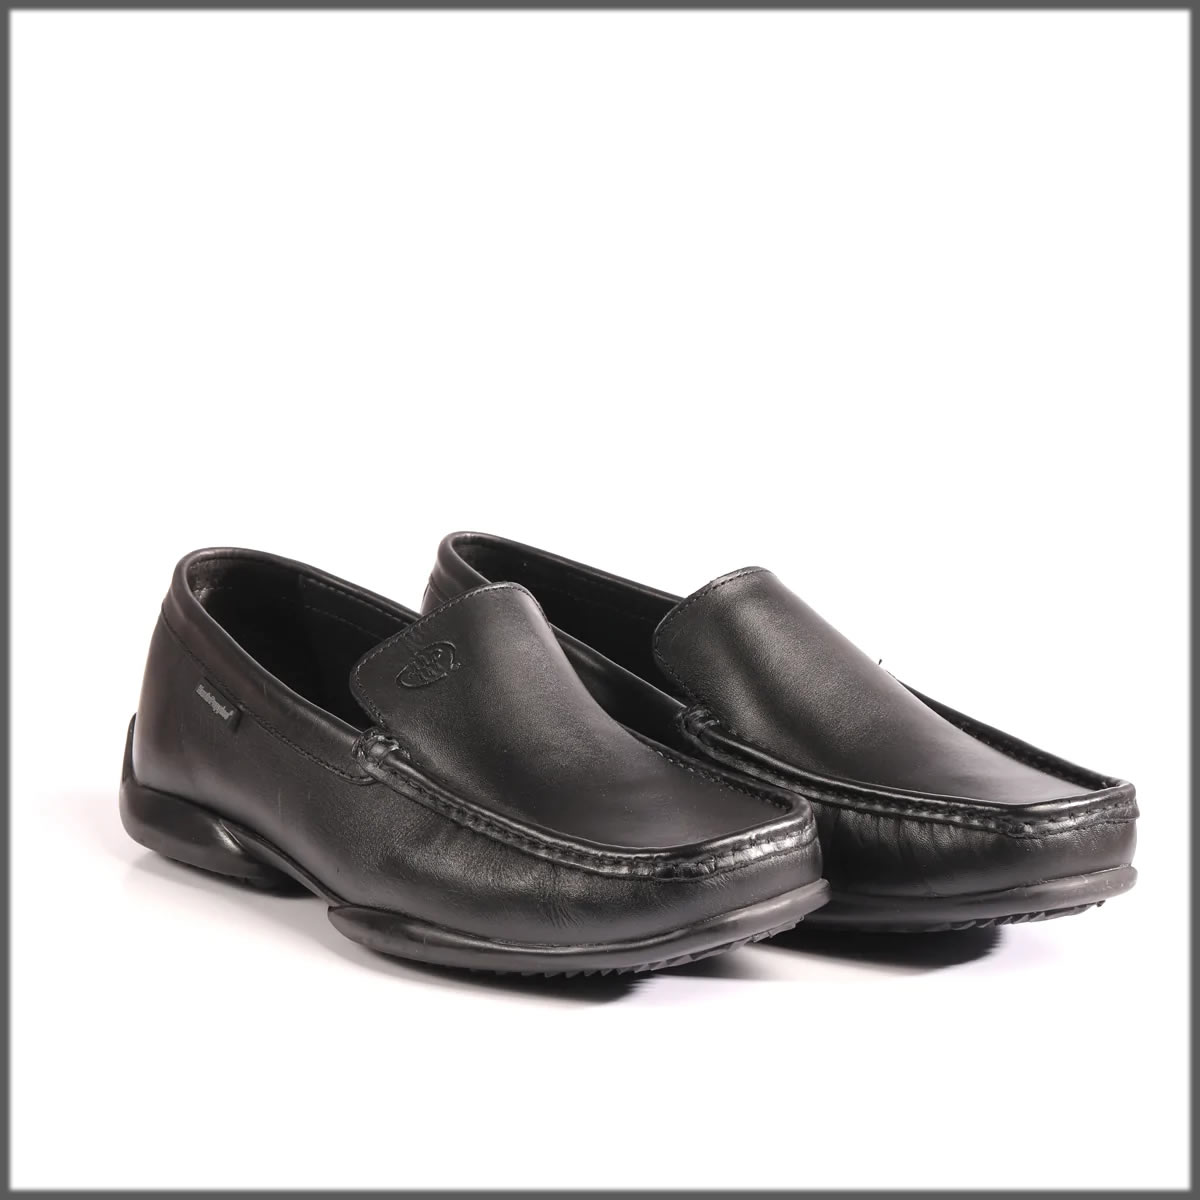 black formal boots for men